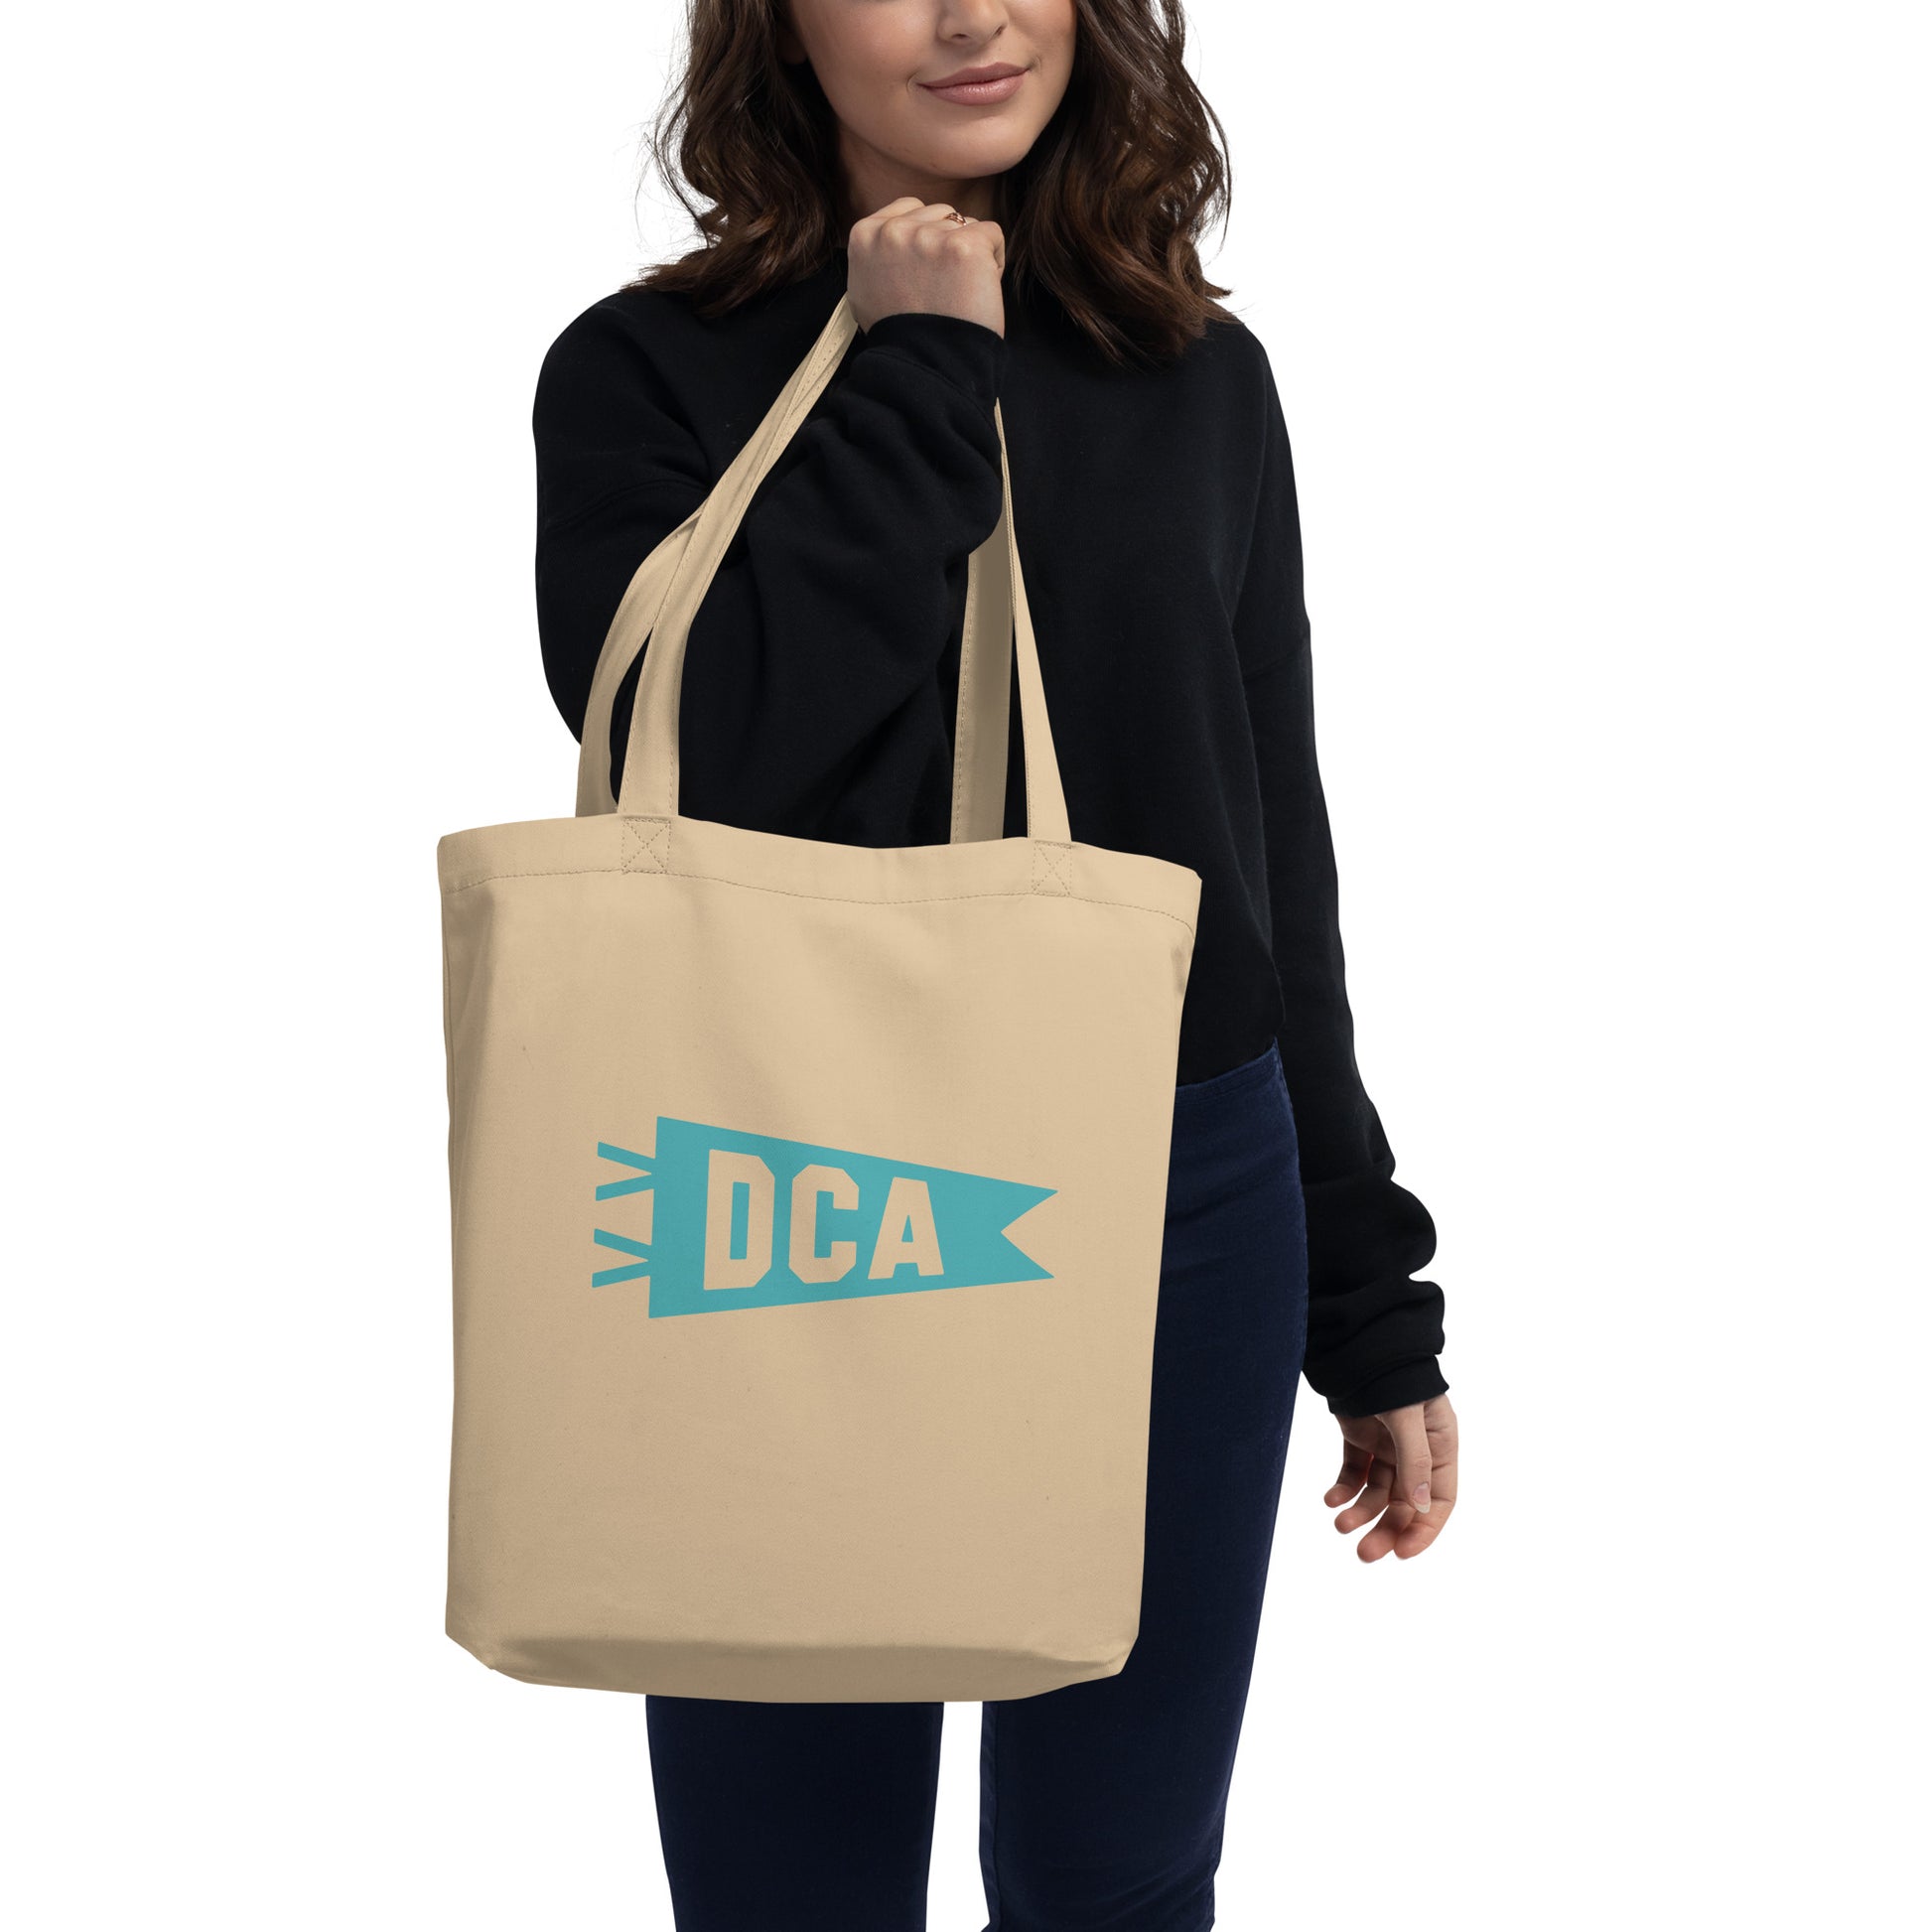 Cool Travel Gift Organic Tote Bag - Viking Blue • DCA Washington • YHM Designs - Image 03